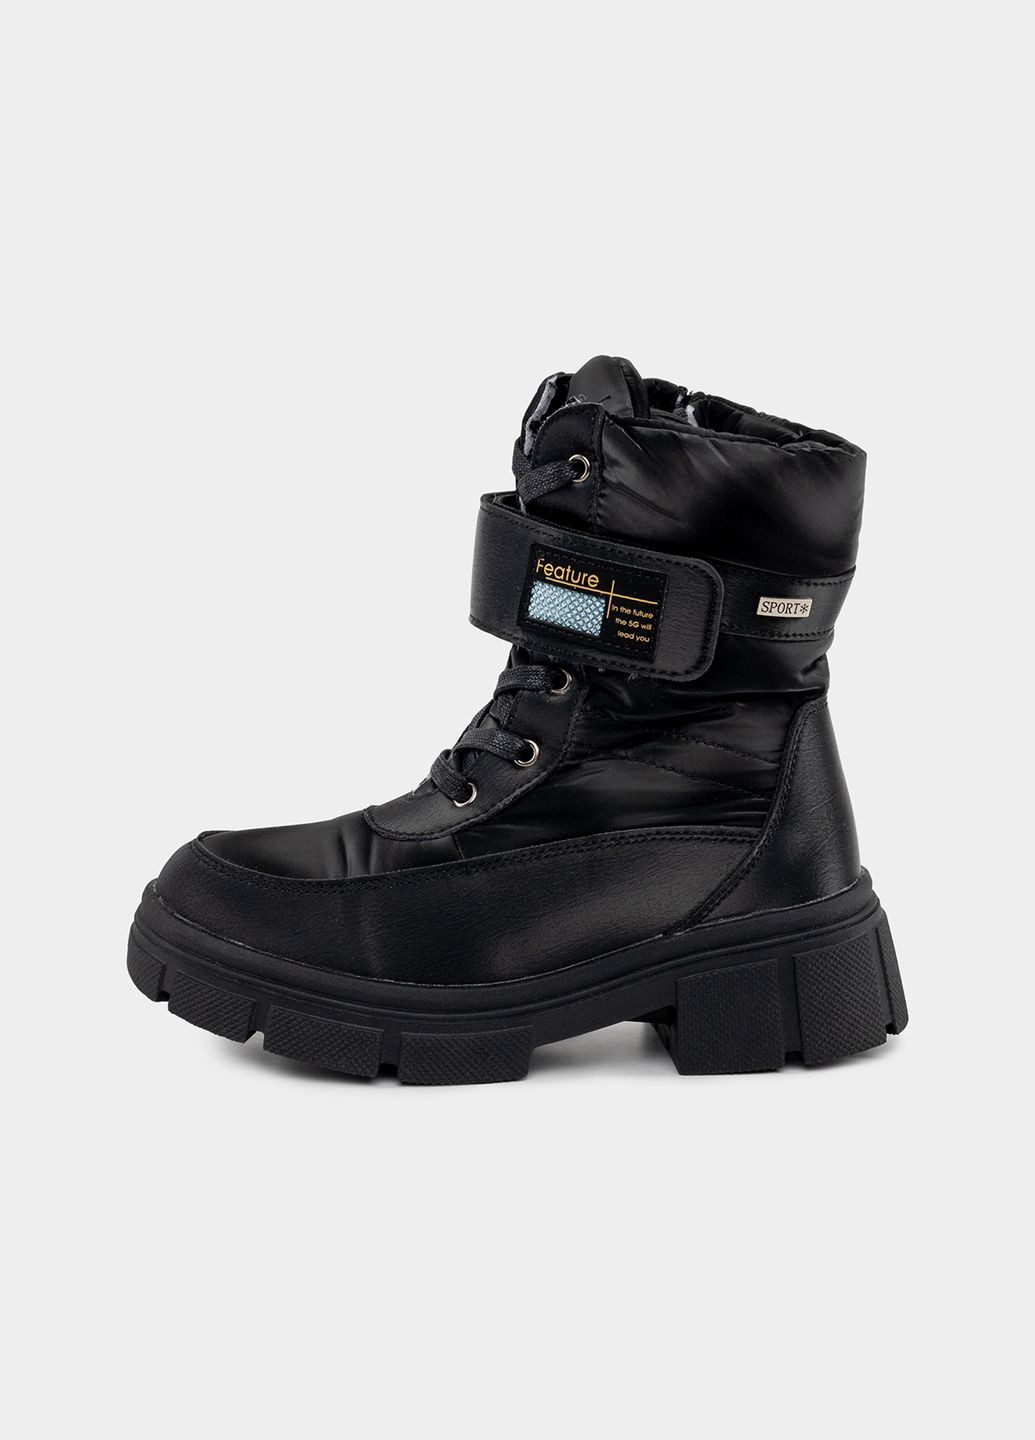 Черные зимние ботинки для девочек цвет черный цб-00228371 Tom.M